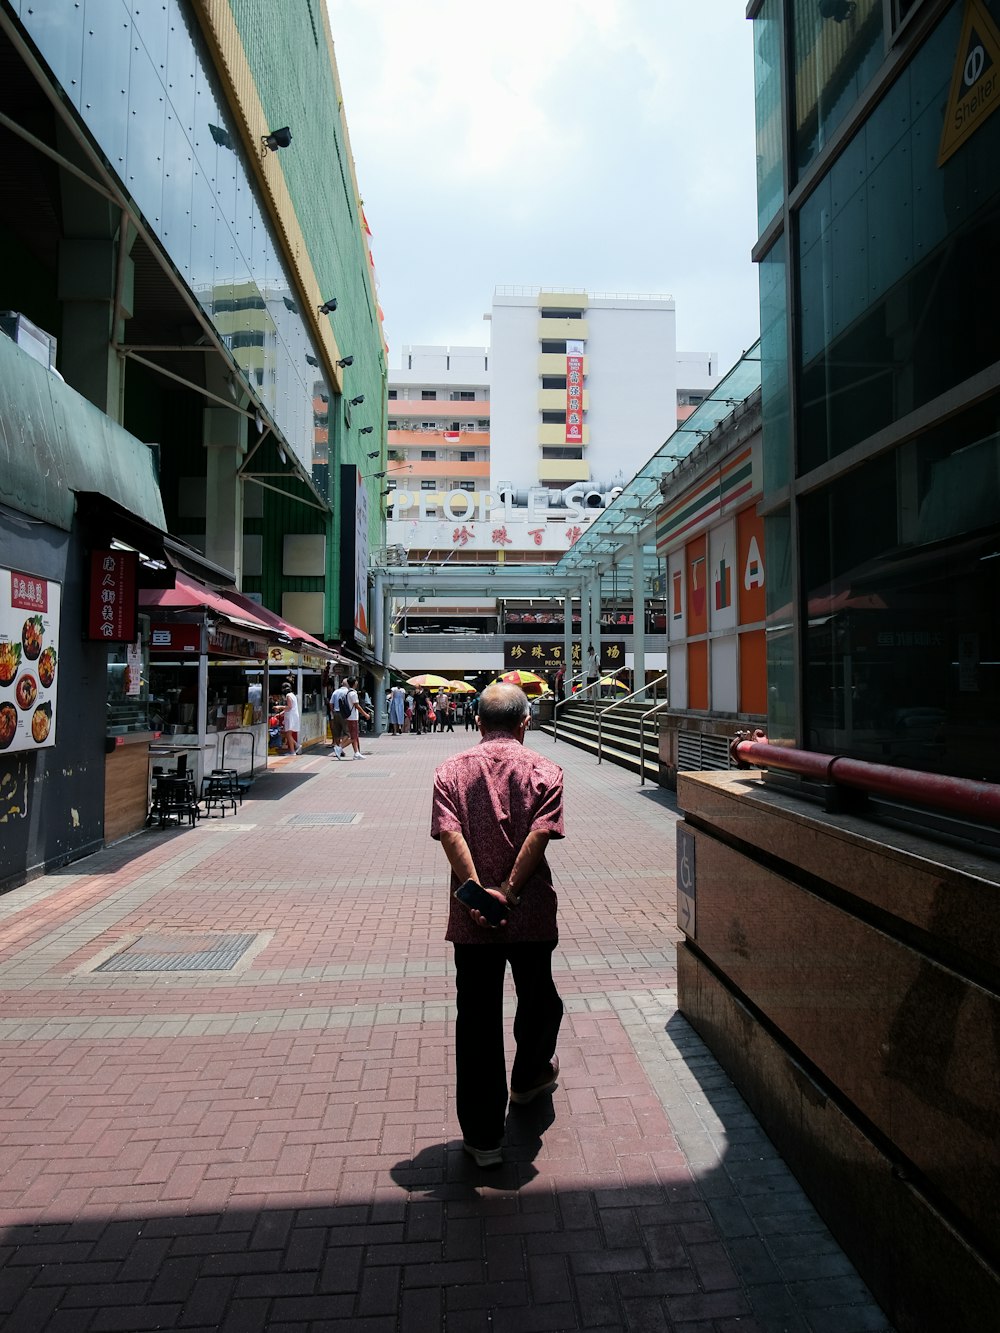 Ein Mann, der einen Bürgersteig in einer Stadt entlanggeht